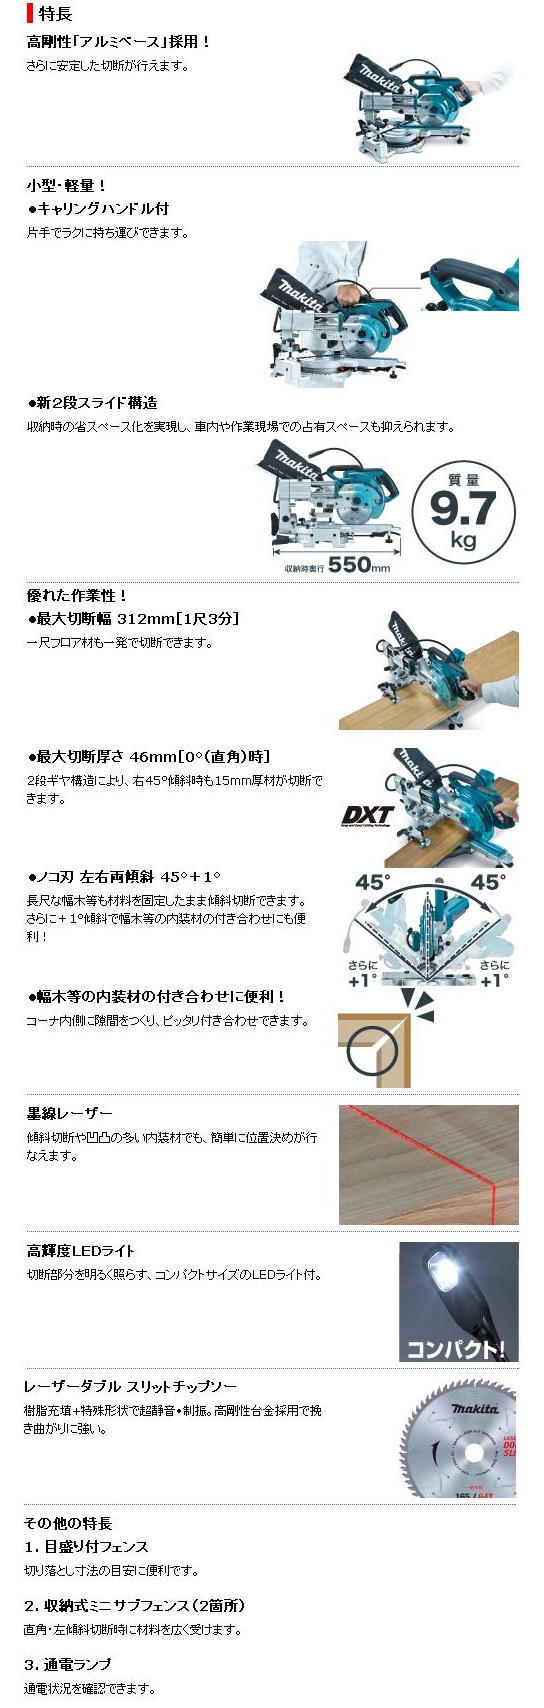 マキタ 165mmスライドマルノコ LS0613FL 電動工具・エアー工具・大工道具（電動工具＞卓上・スライド丸ノコ）